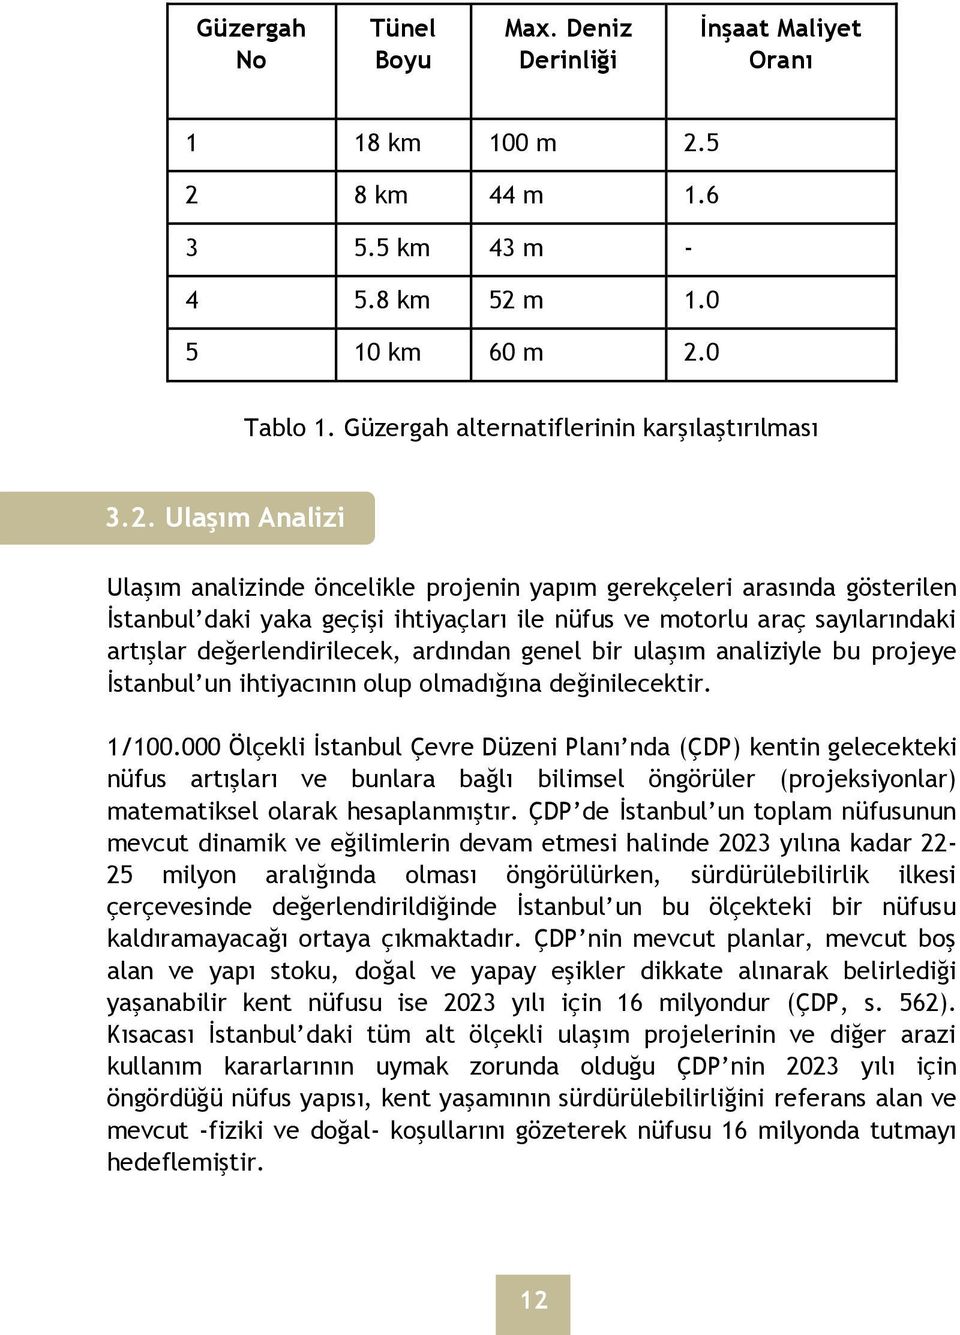 Ulaşım Analizi Ulaşım analizinde öncelikle projenin yapım gerekçeleri arasında gösterilen İstanbul daki yaka geçişi ihtiyaçları ile nüfus ve motorlu araç sayılarındaki artışlar değerlendirilecek,